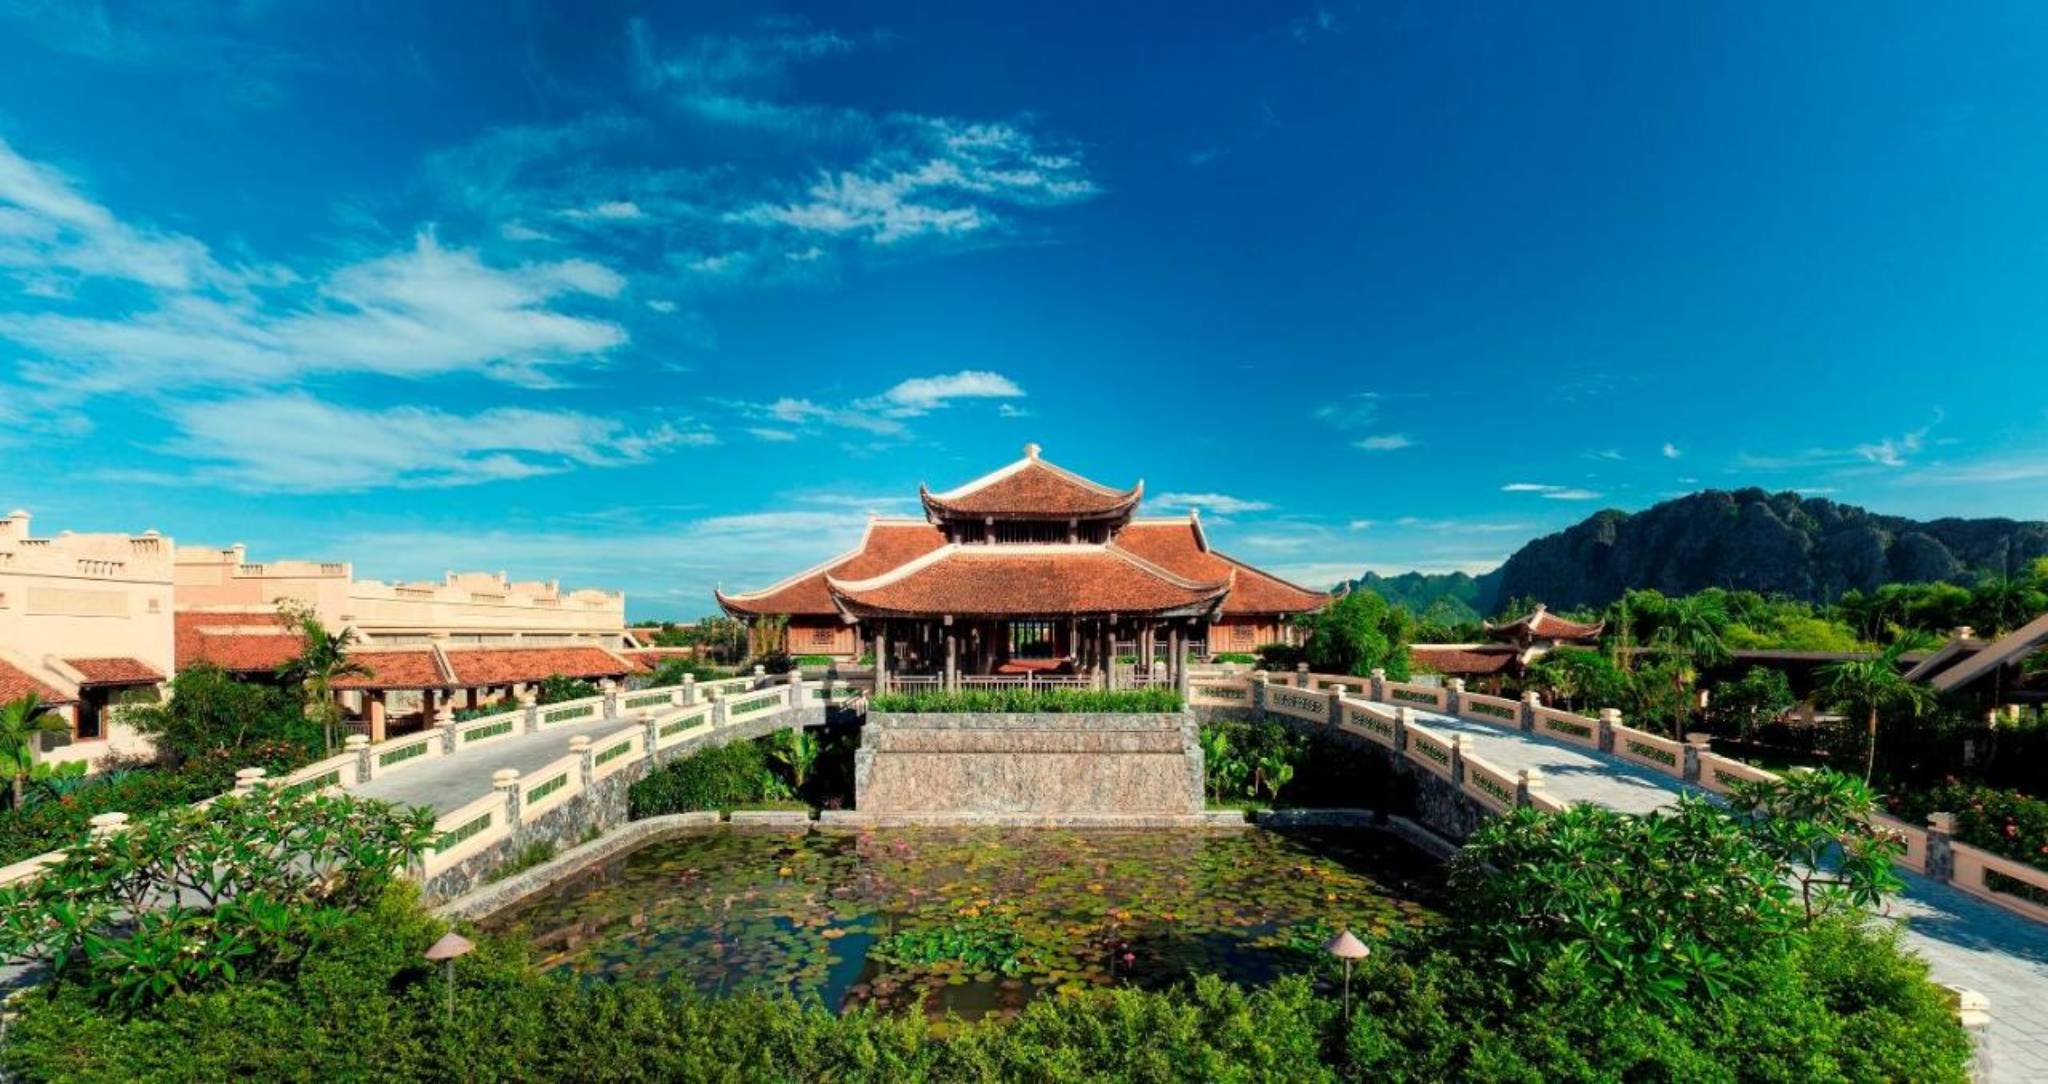 Review Emeralda Resort Ninh Binh: Thiết kế độc lạ lấy cảm hứng từ cung đình xưa